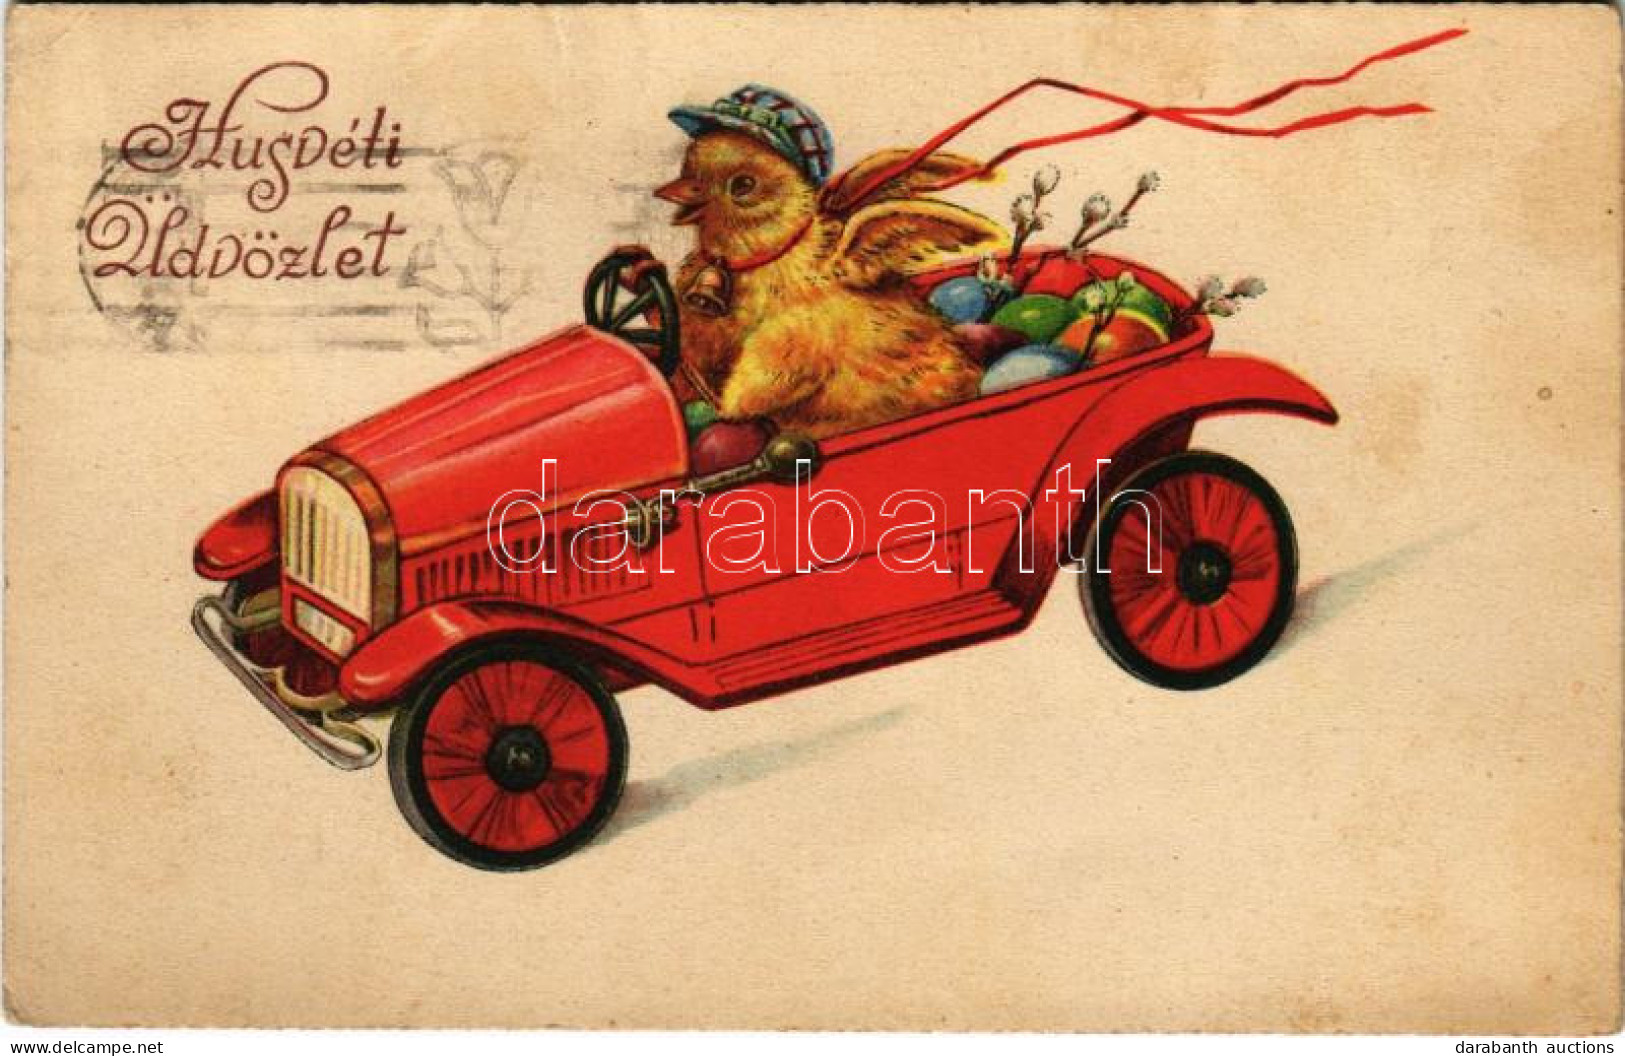 T2/T3 1935 Húsvéti üdvözlet, Autóban Száguldozó Kiscsibe / Easter Greeting, Chick In Automobile. L & P 2507. (EK) - Non Classés